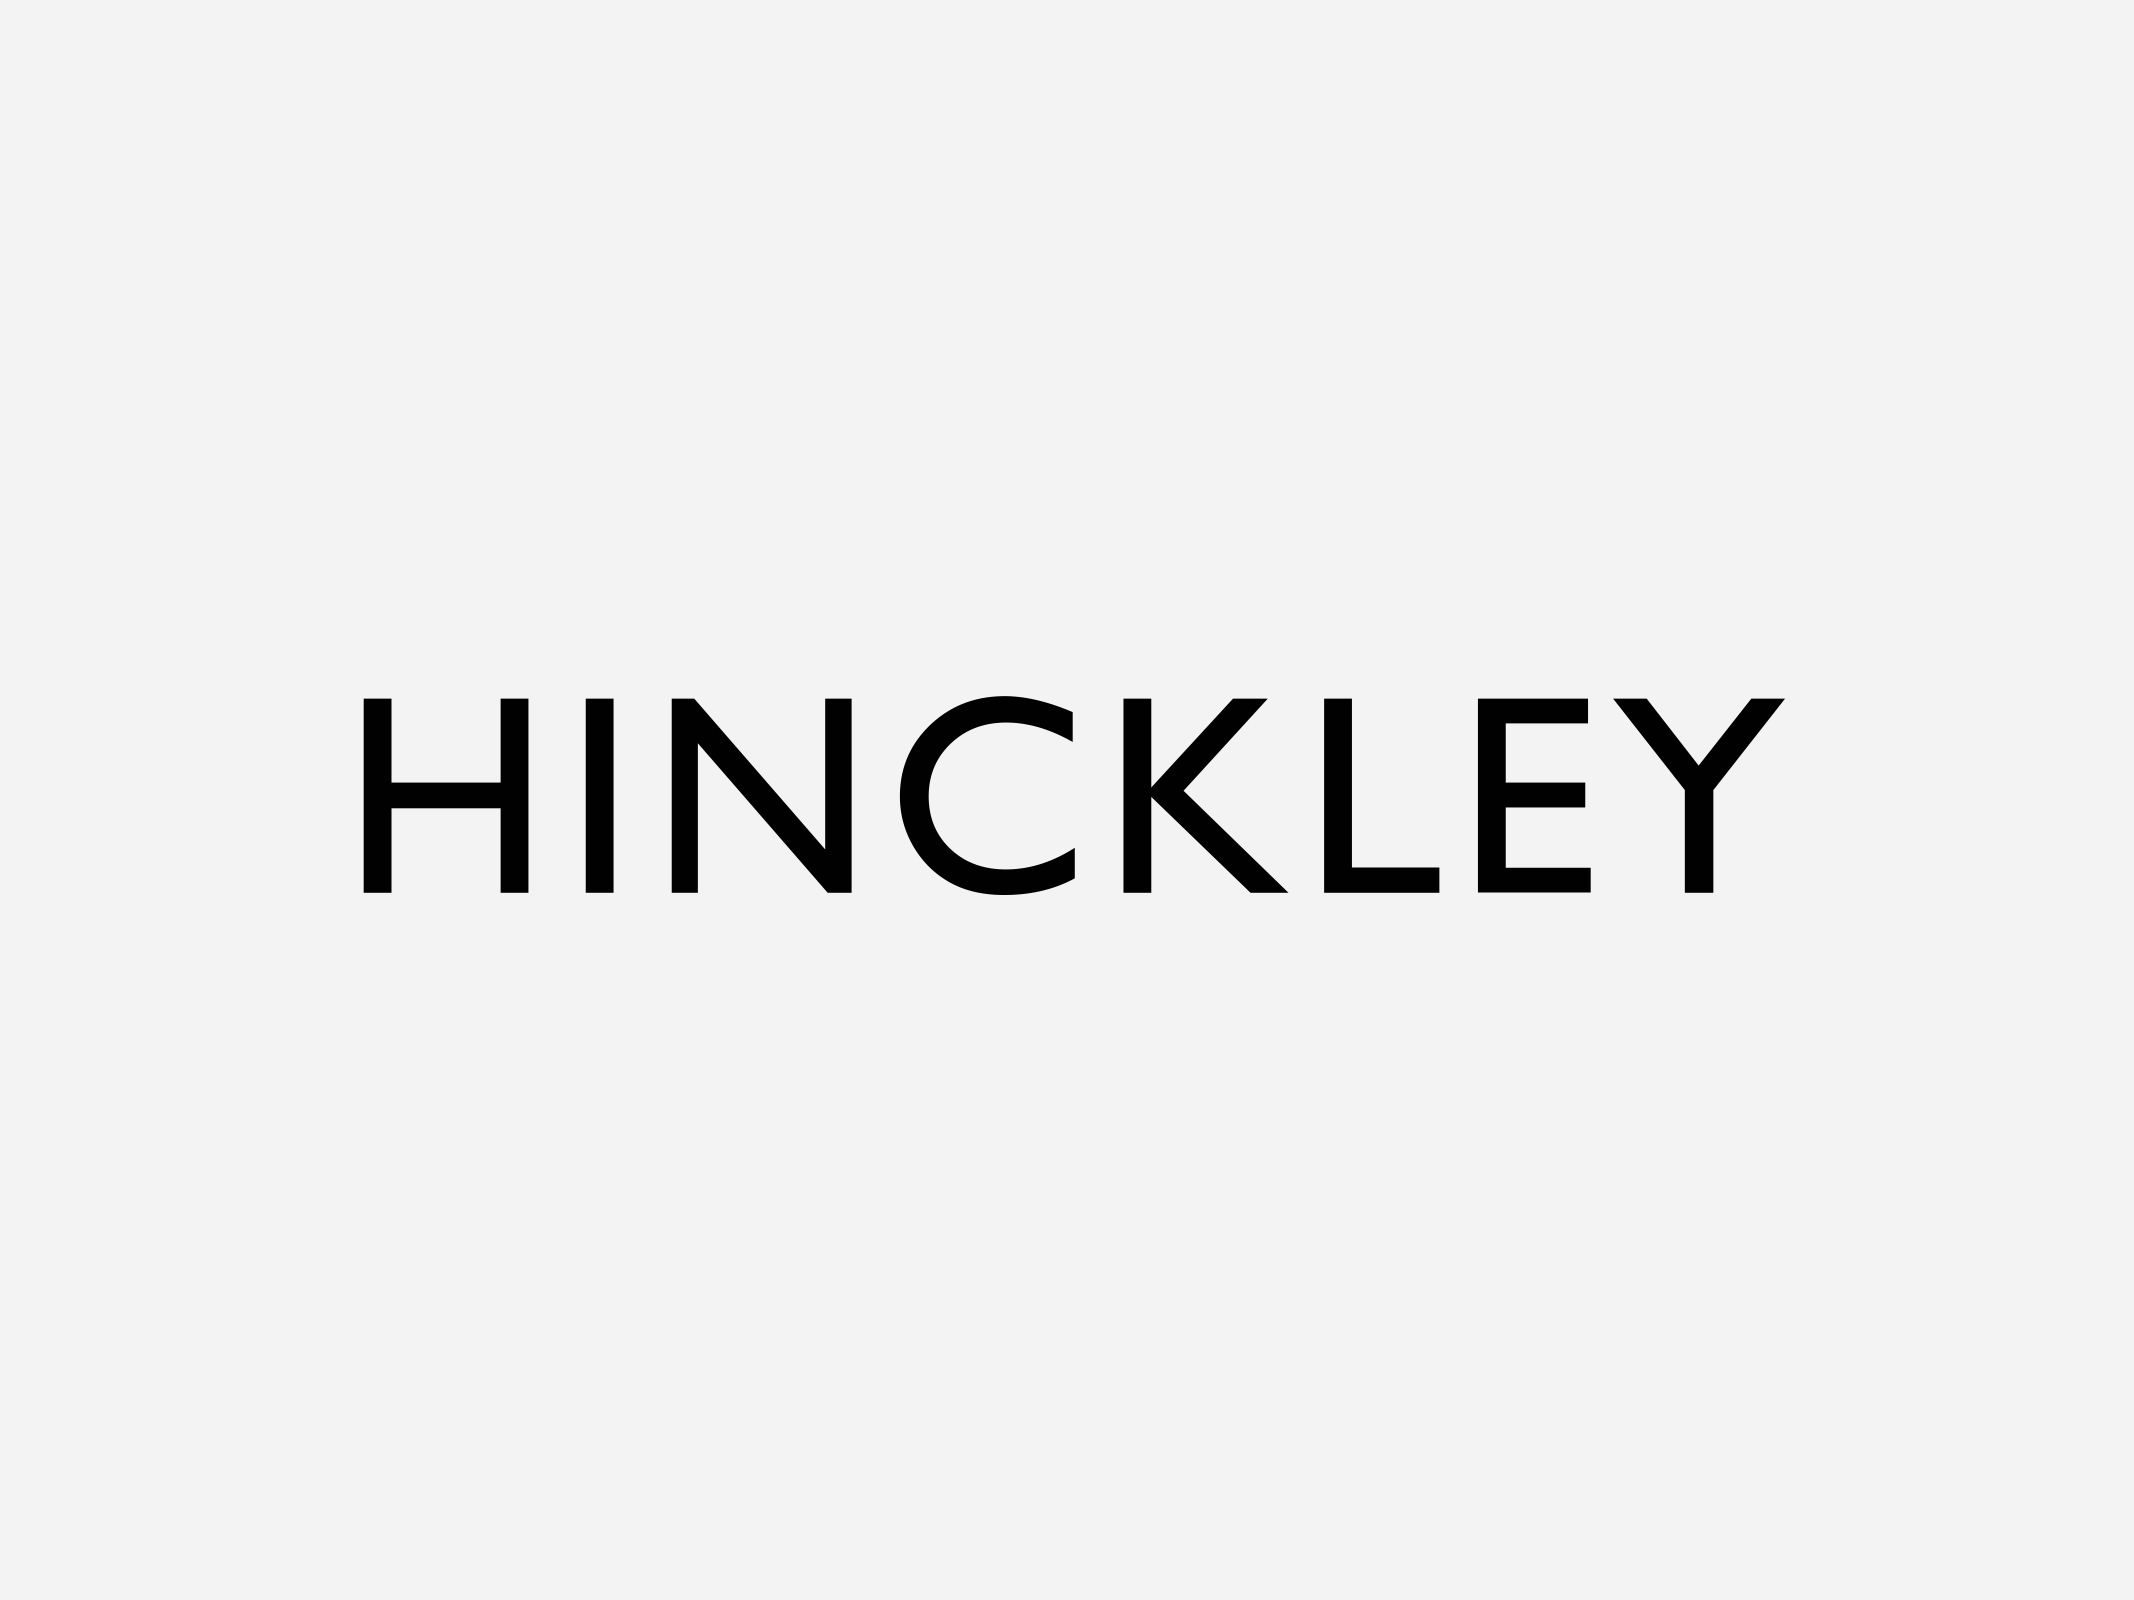 Hinckley Le idee non dormono mai 2016 Hinckley Logo